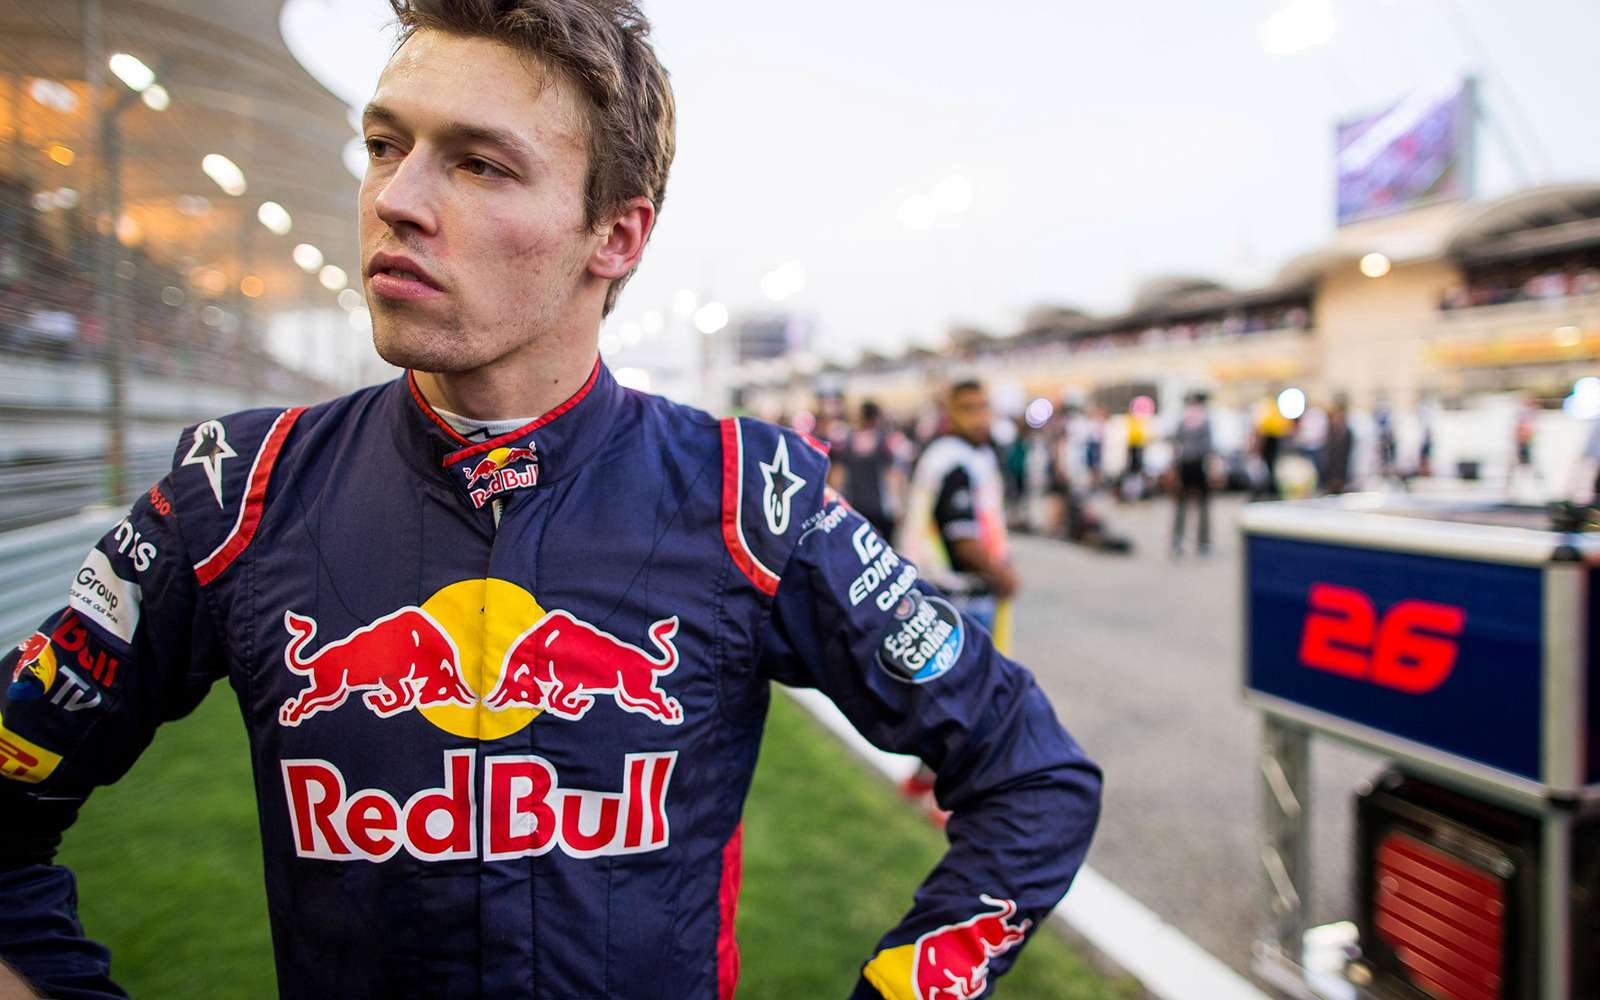 Даниил Квят возвращается в гонки Формулы-1. Теперь российских пилотов будет двое!